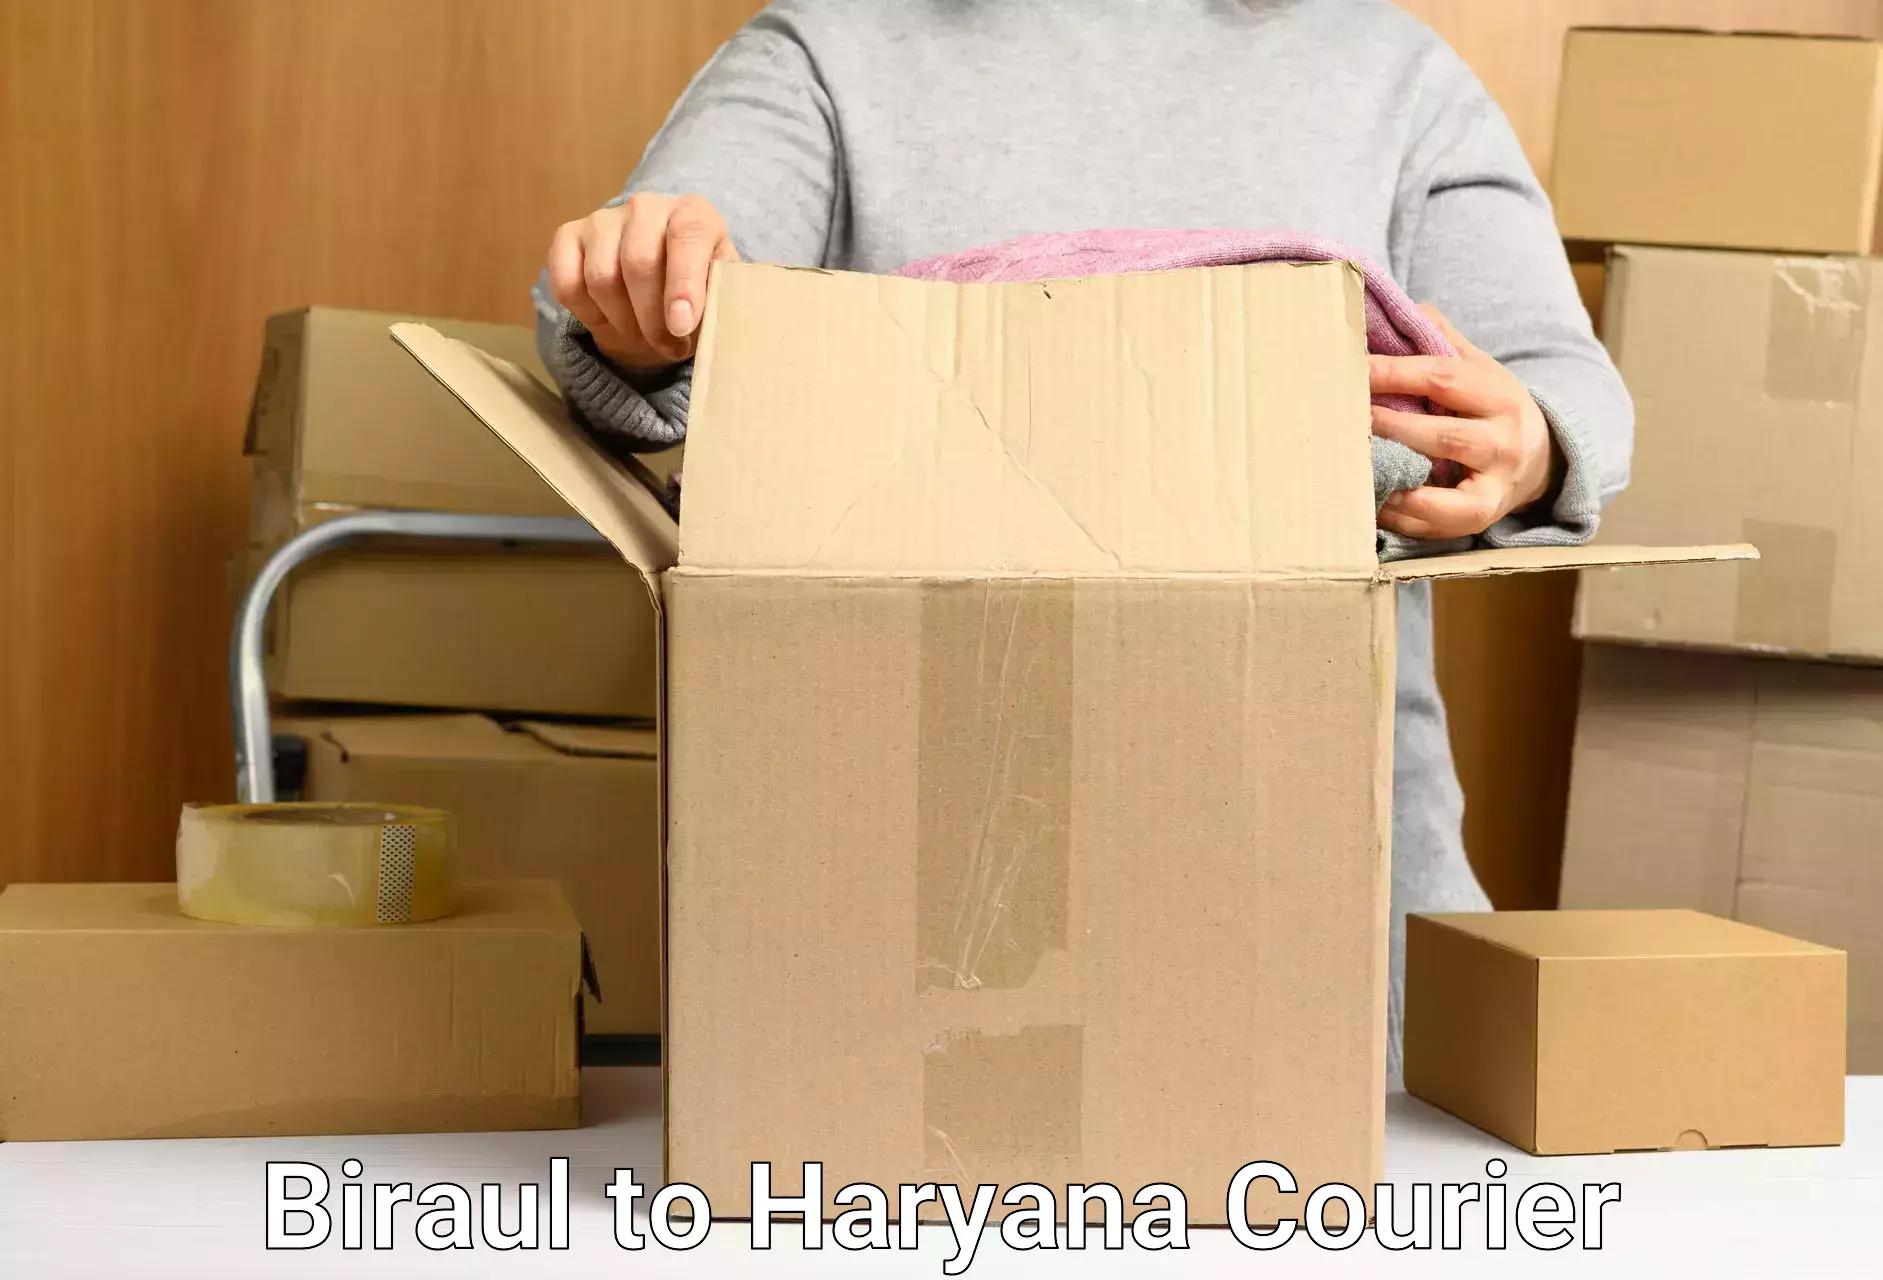 Urgent courier needs Biraul to Chirya